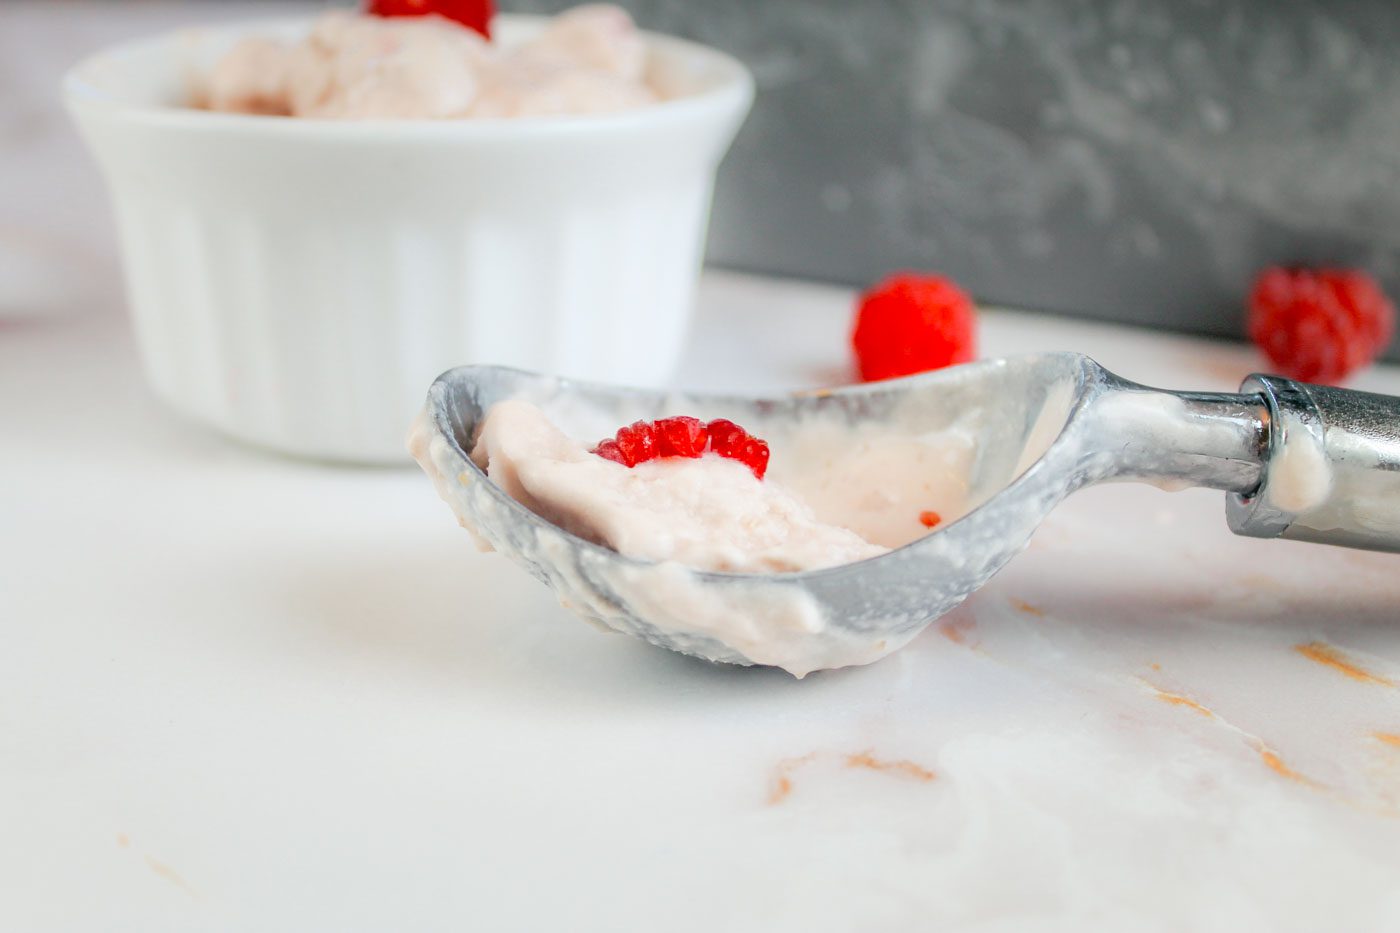 ice cream scoop full of melted raspberry ice cream